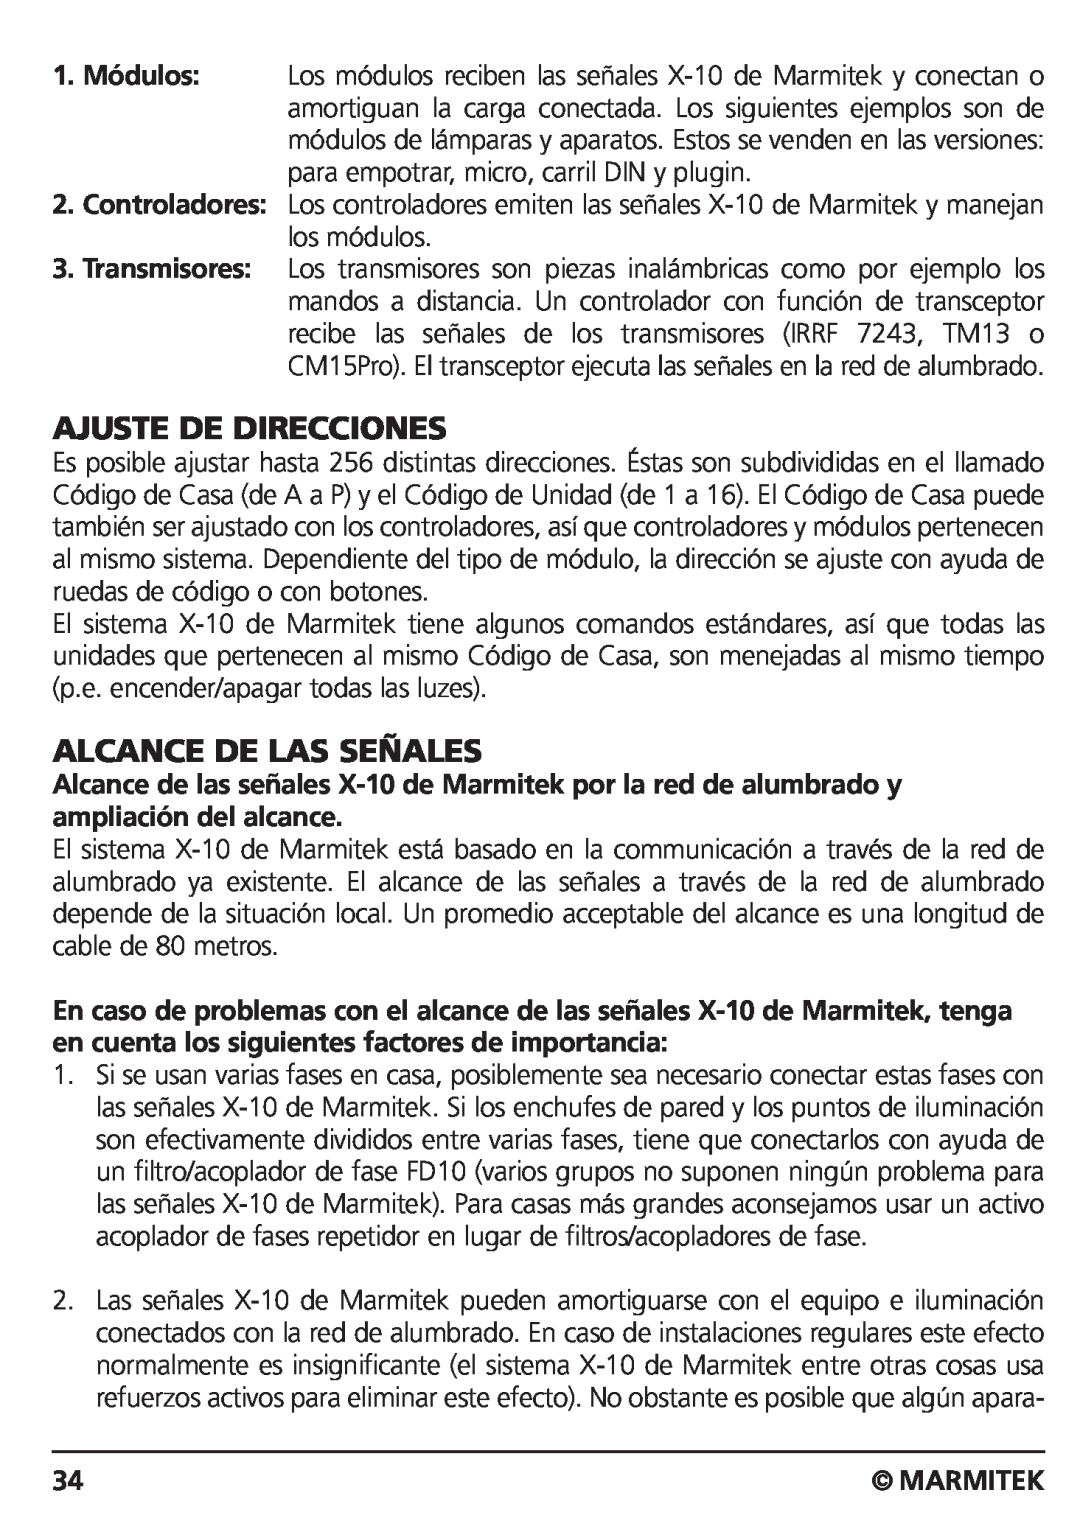 Marmitek CM15PRO manual Ajuste De Direcciones, Alcance De Las Señales, Marmitek 